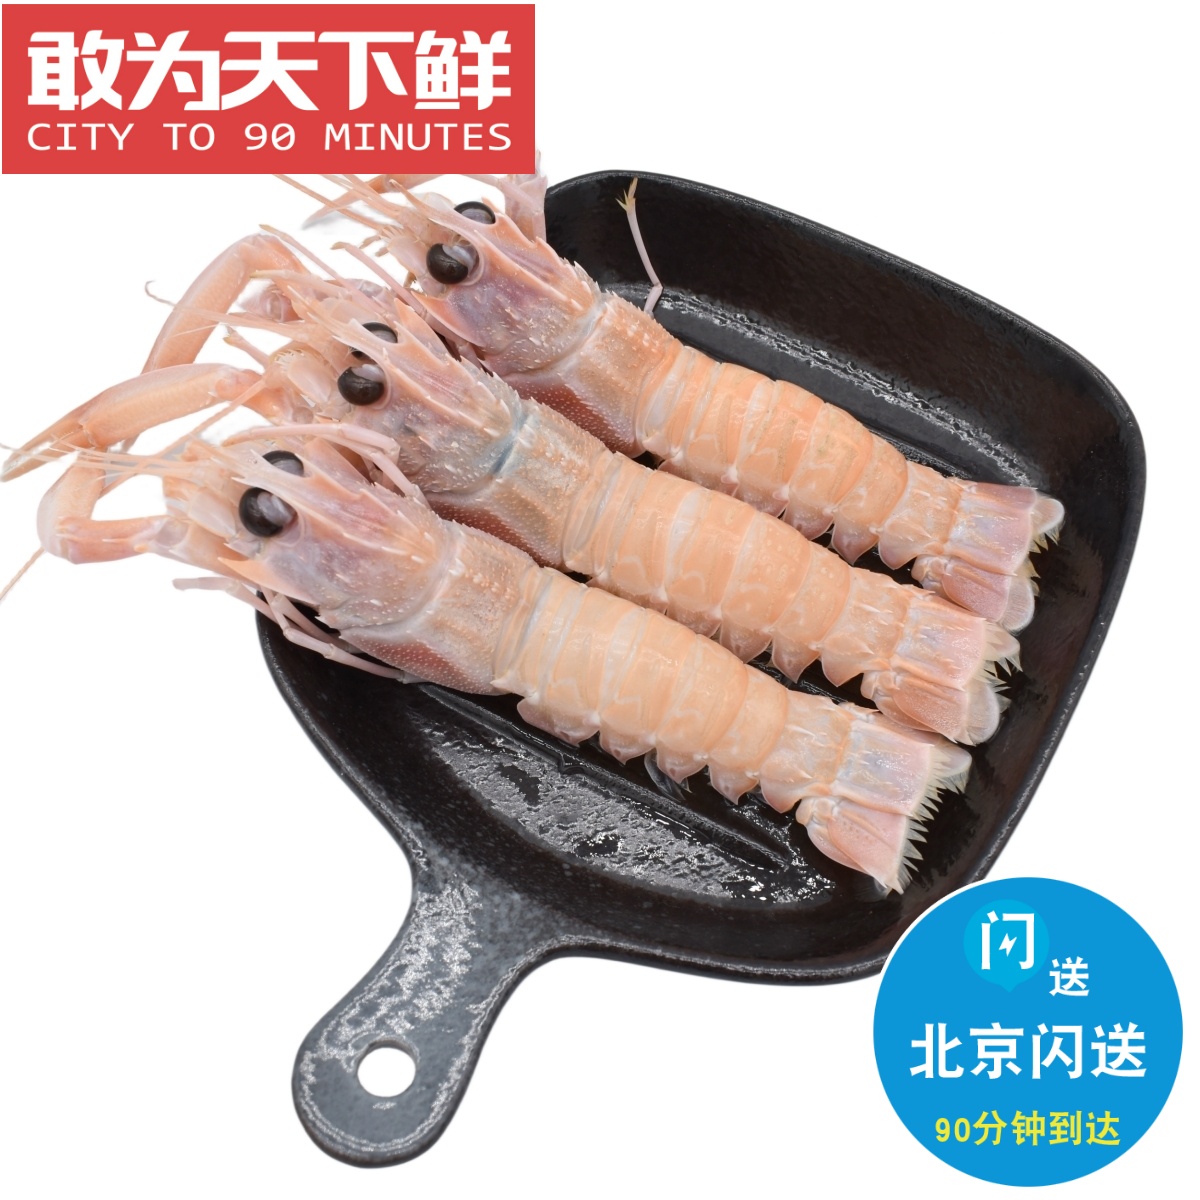 1kg 北京闪送 澳大利亚 鳌虾 刺身 scampi斯干比 深海小龙虾 海鲜